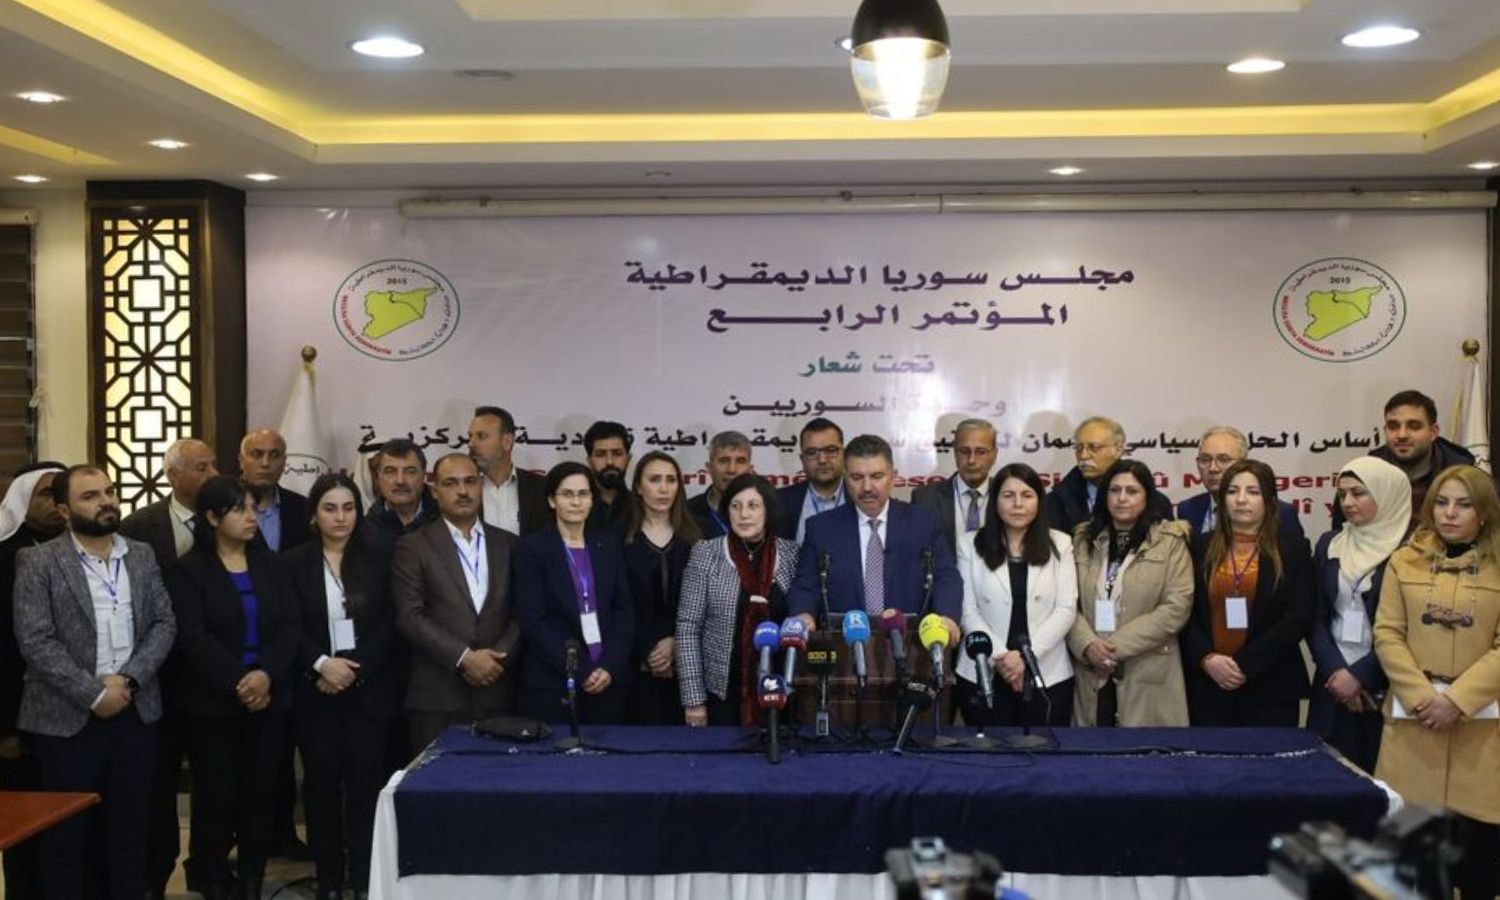 أعضاء مجلس سوريا الديمقراطية يتوسطهم الرئيس المشترك له محمود المسلط- 21 من كانون الأول 2023 (مجلس سوريا الديمقراطية)